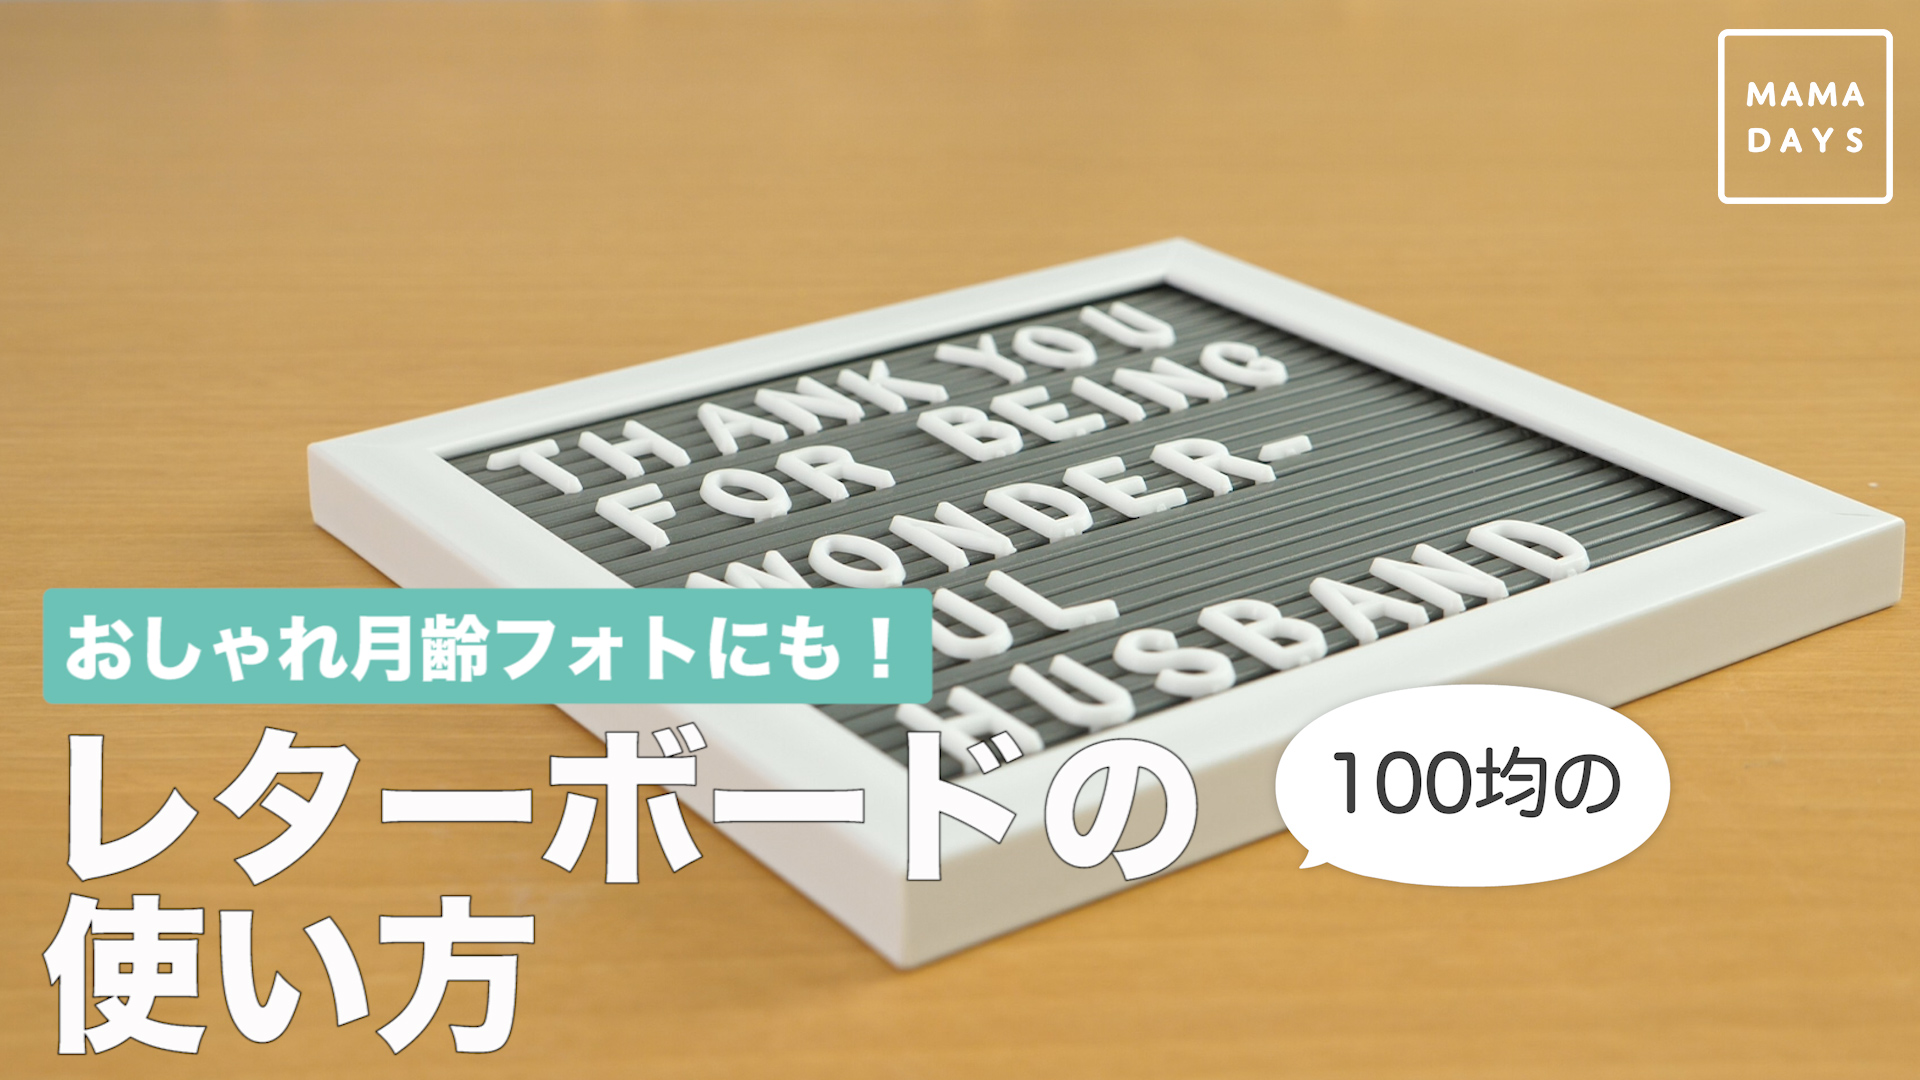 おしゃれ月齢フォトにも 100均のレターボードの使い方 Mamadays ママデイズ Yahoo Japan